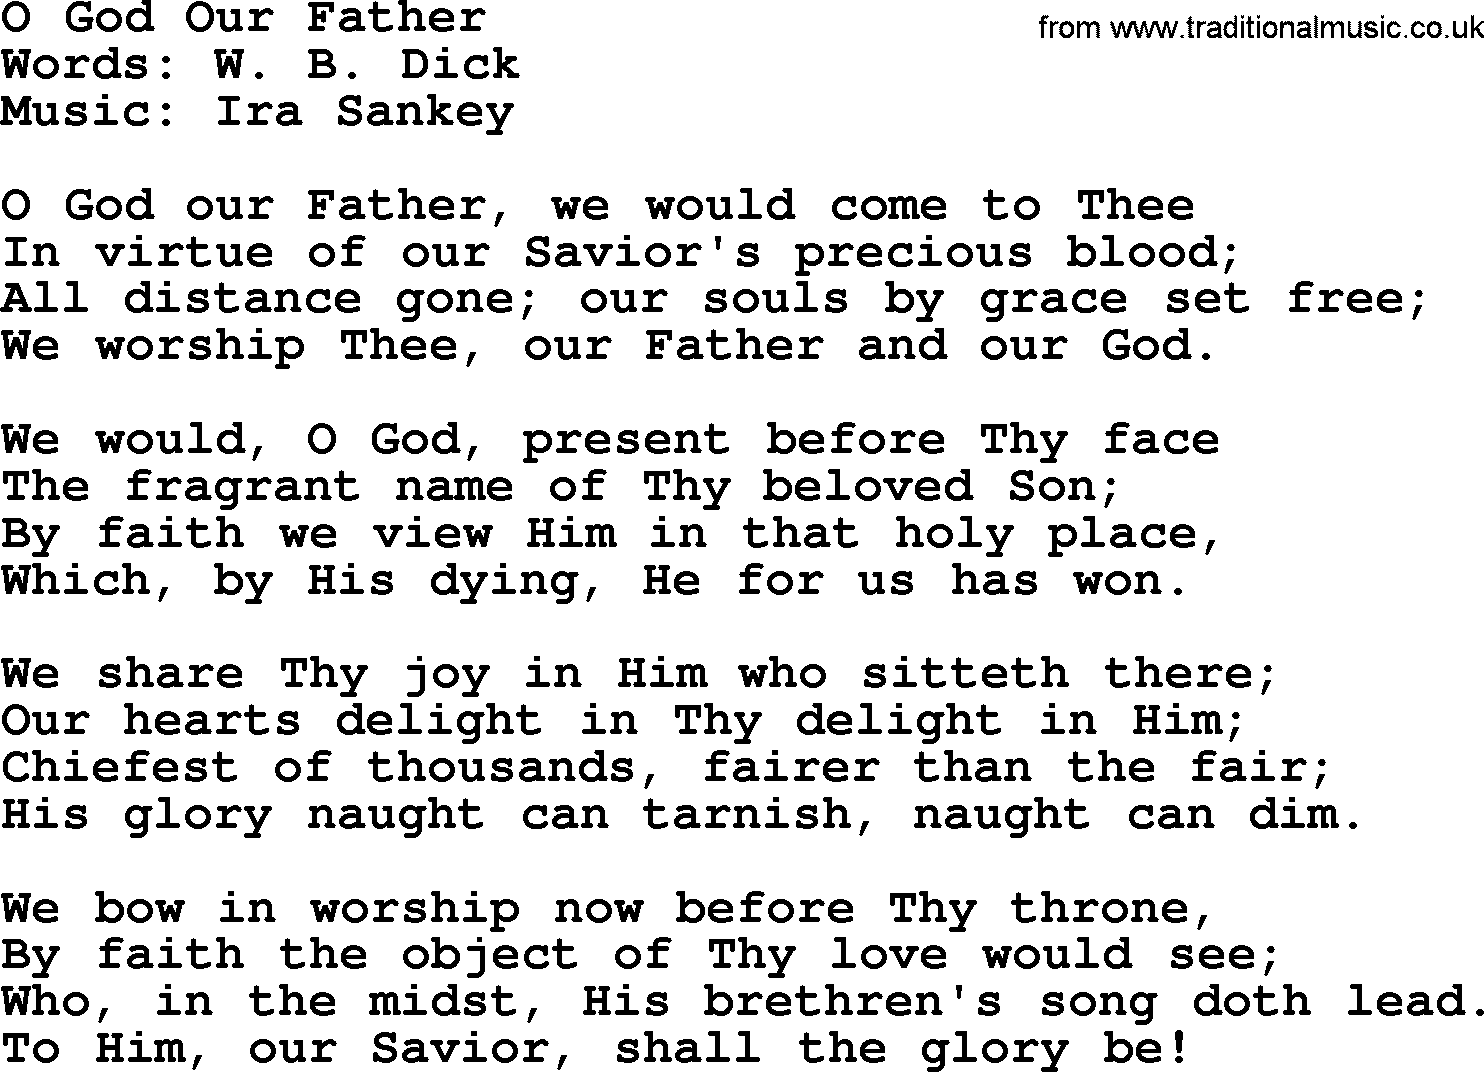 Ira Sankey hymn: O God Our Father-Ira Sankey, lyrics